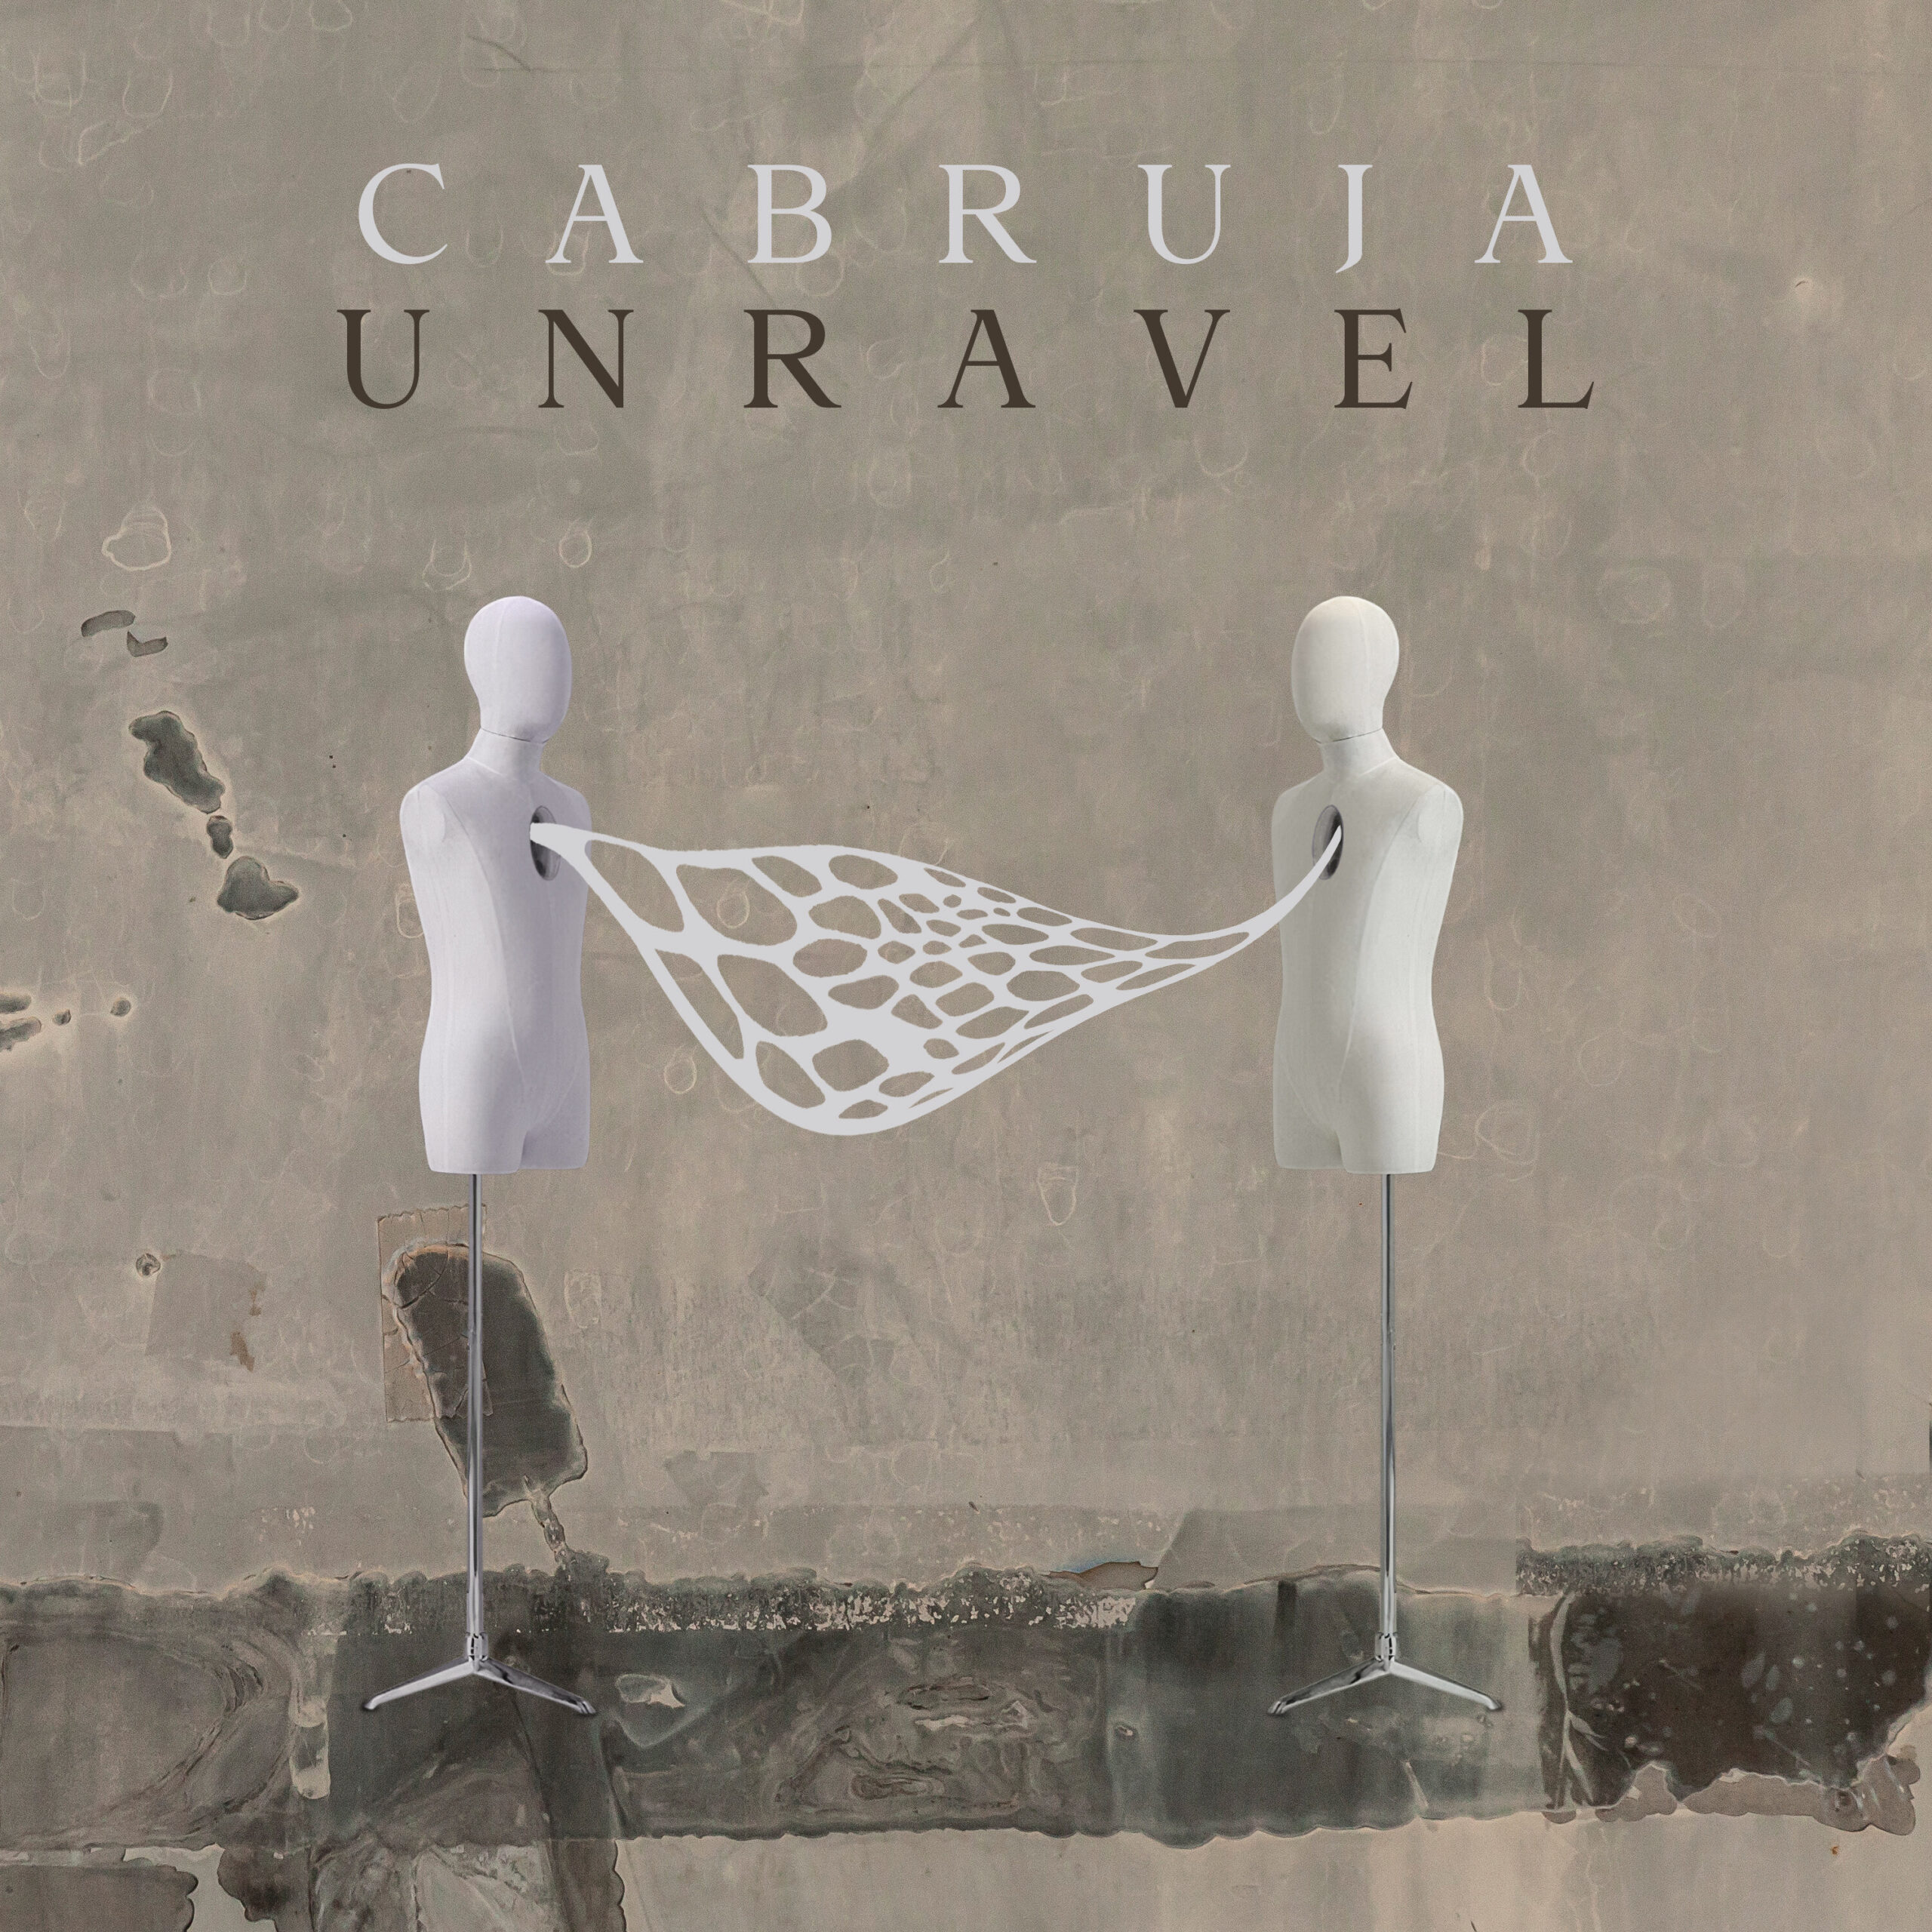 Fuori il nuovo video di Cabruja, “Unravel”